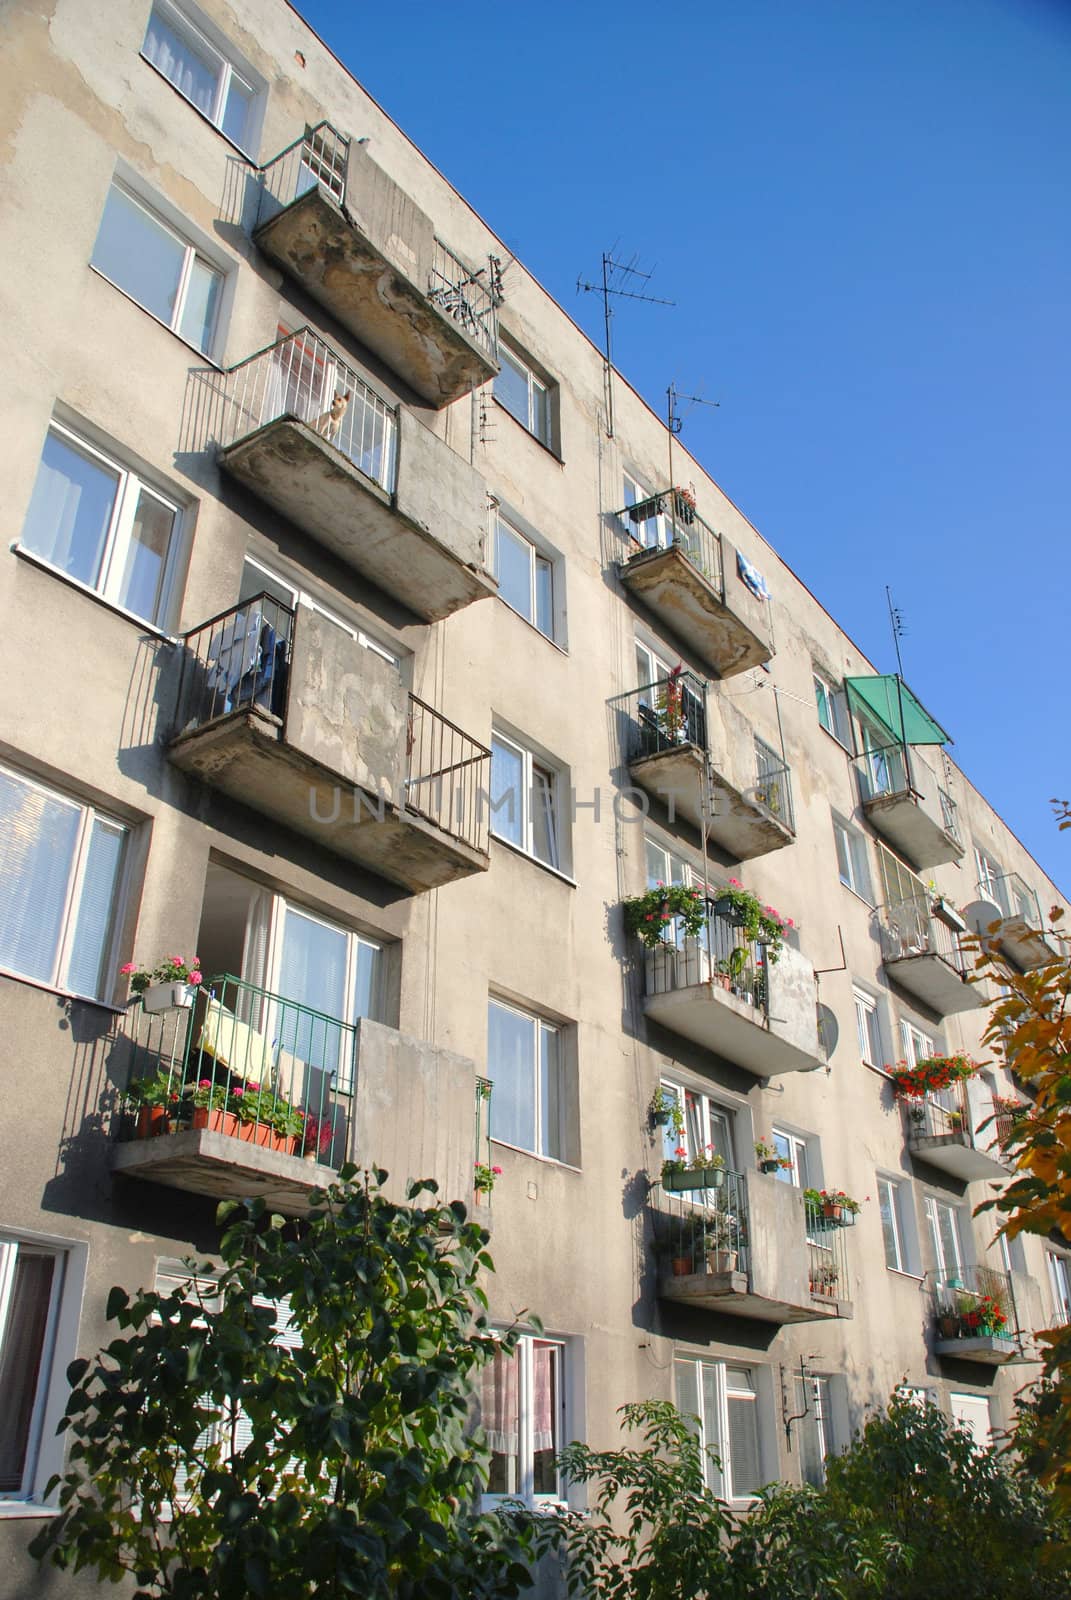 Renovated balconies in multi-family building. Wroclaw. Poland. by wojciechkozlowski